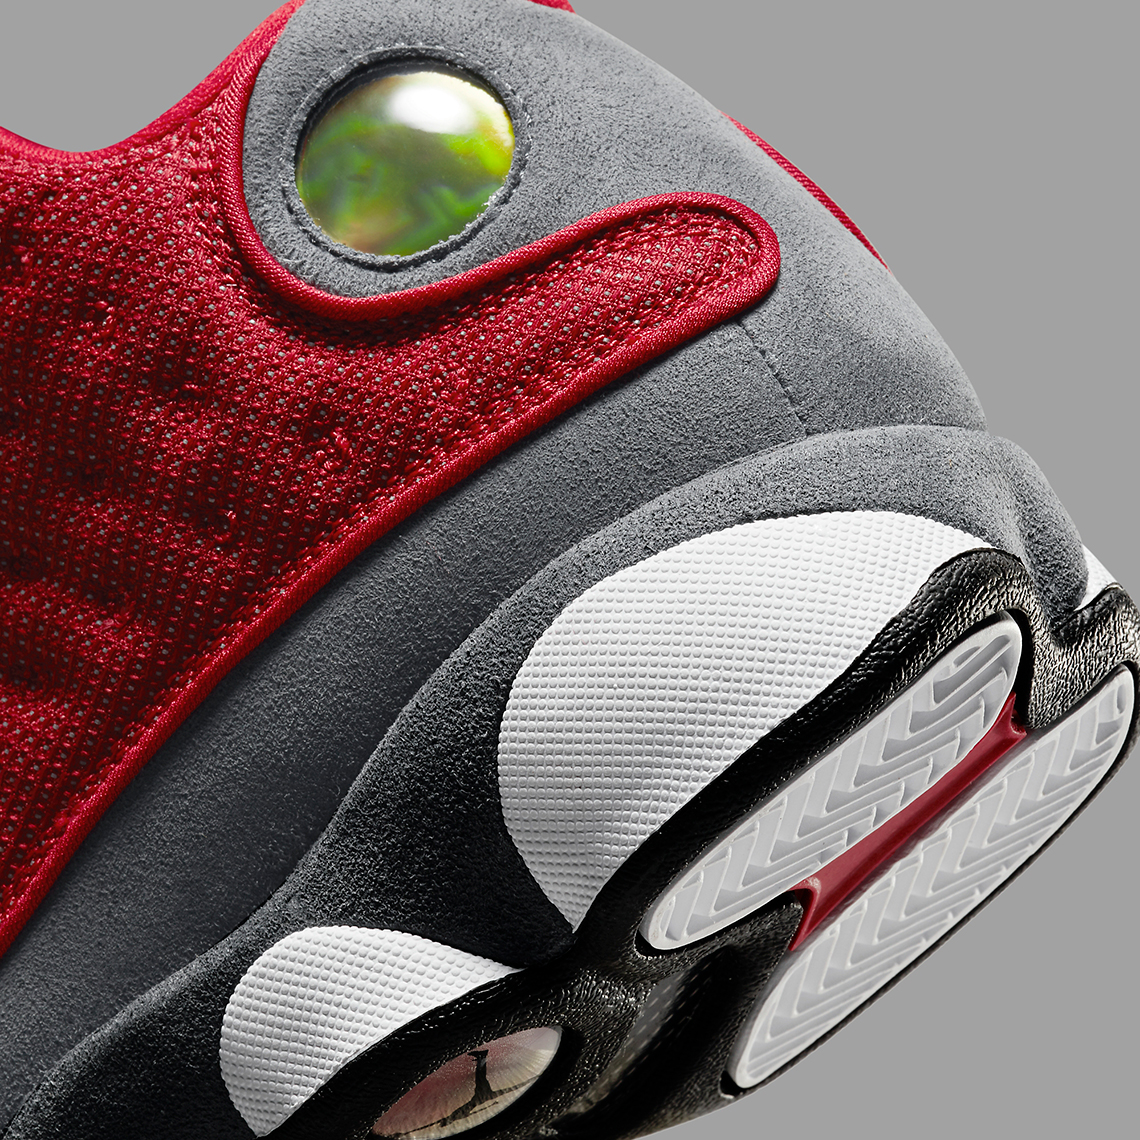 Air Jordan 13 'Red Flint' Release Date. Nike SNKRS IN